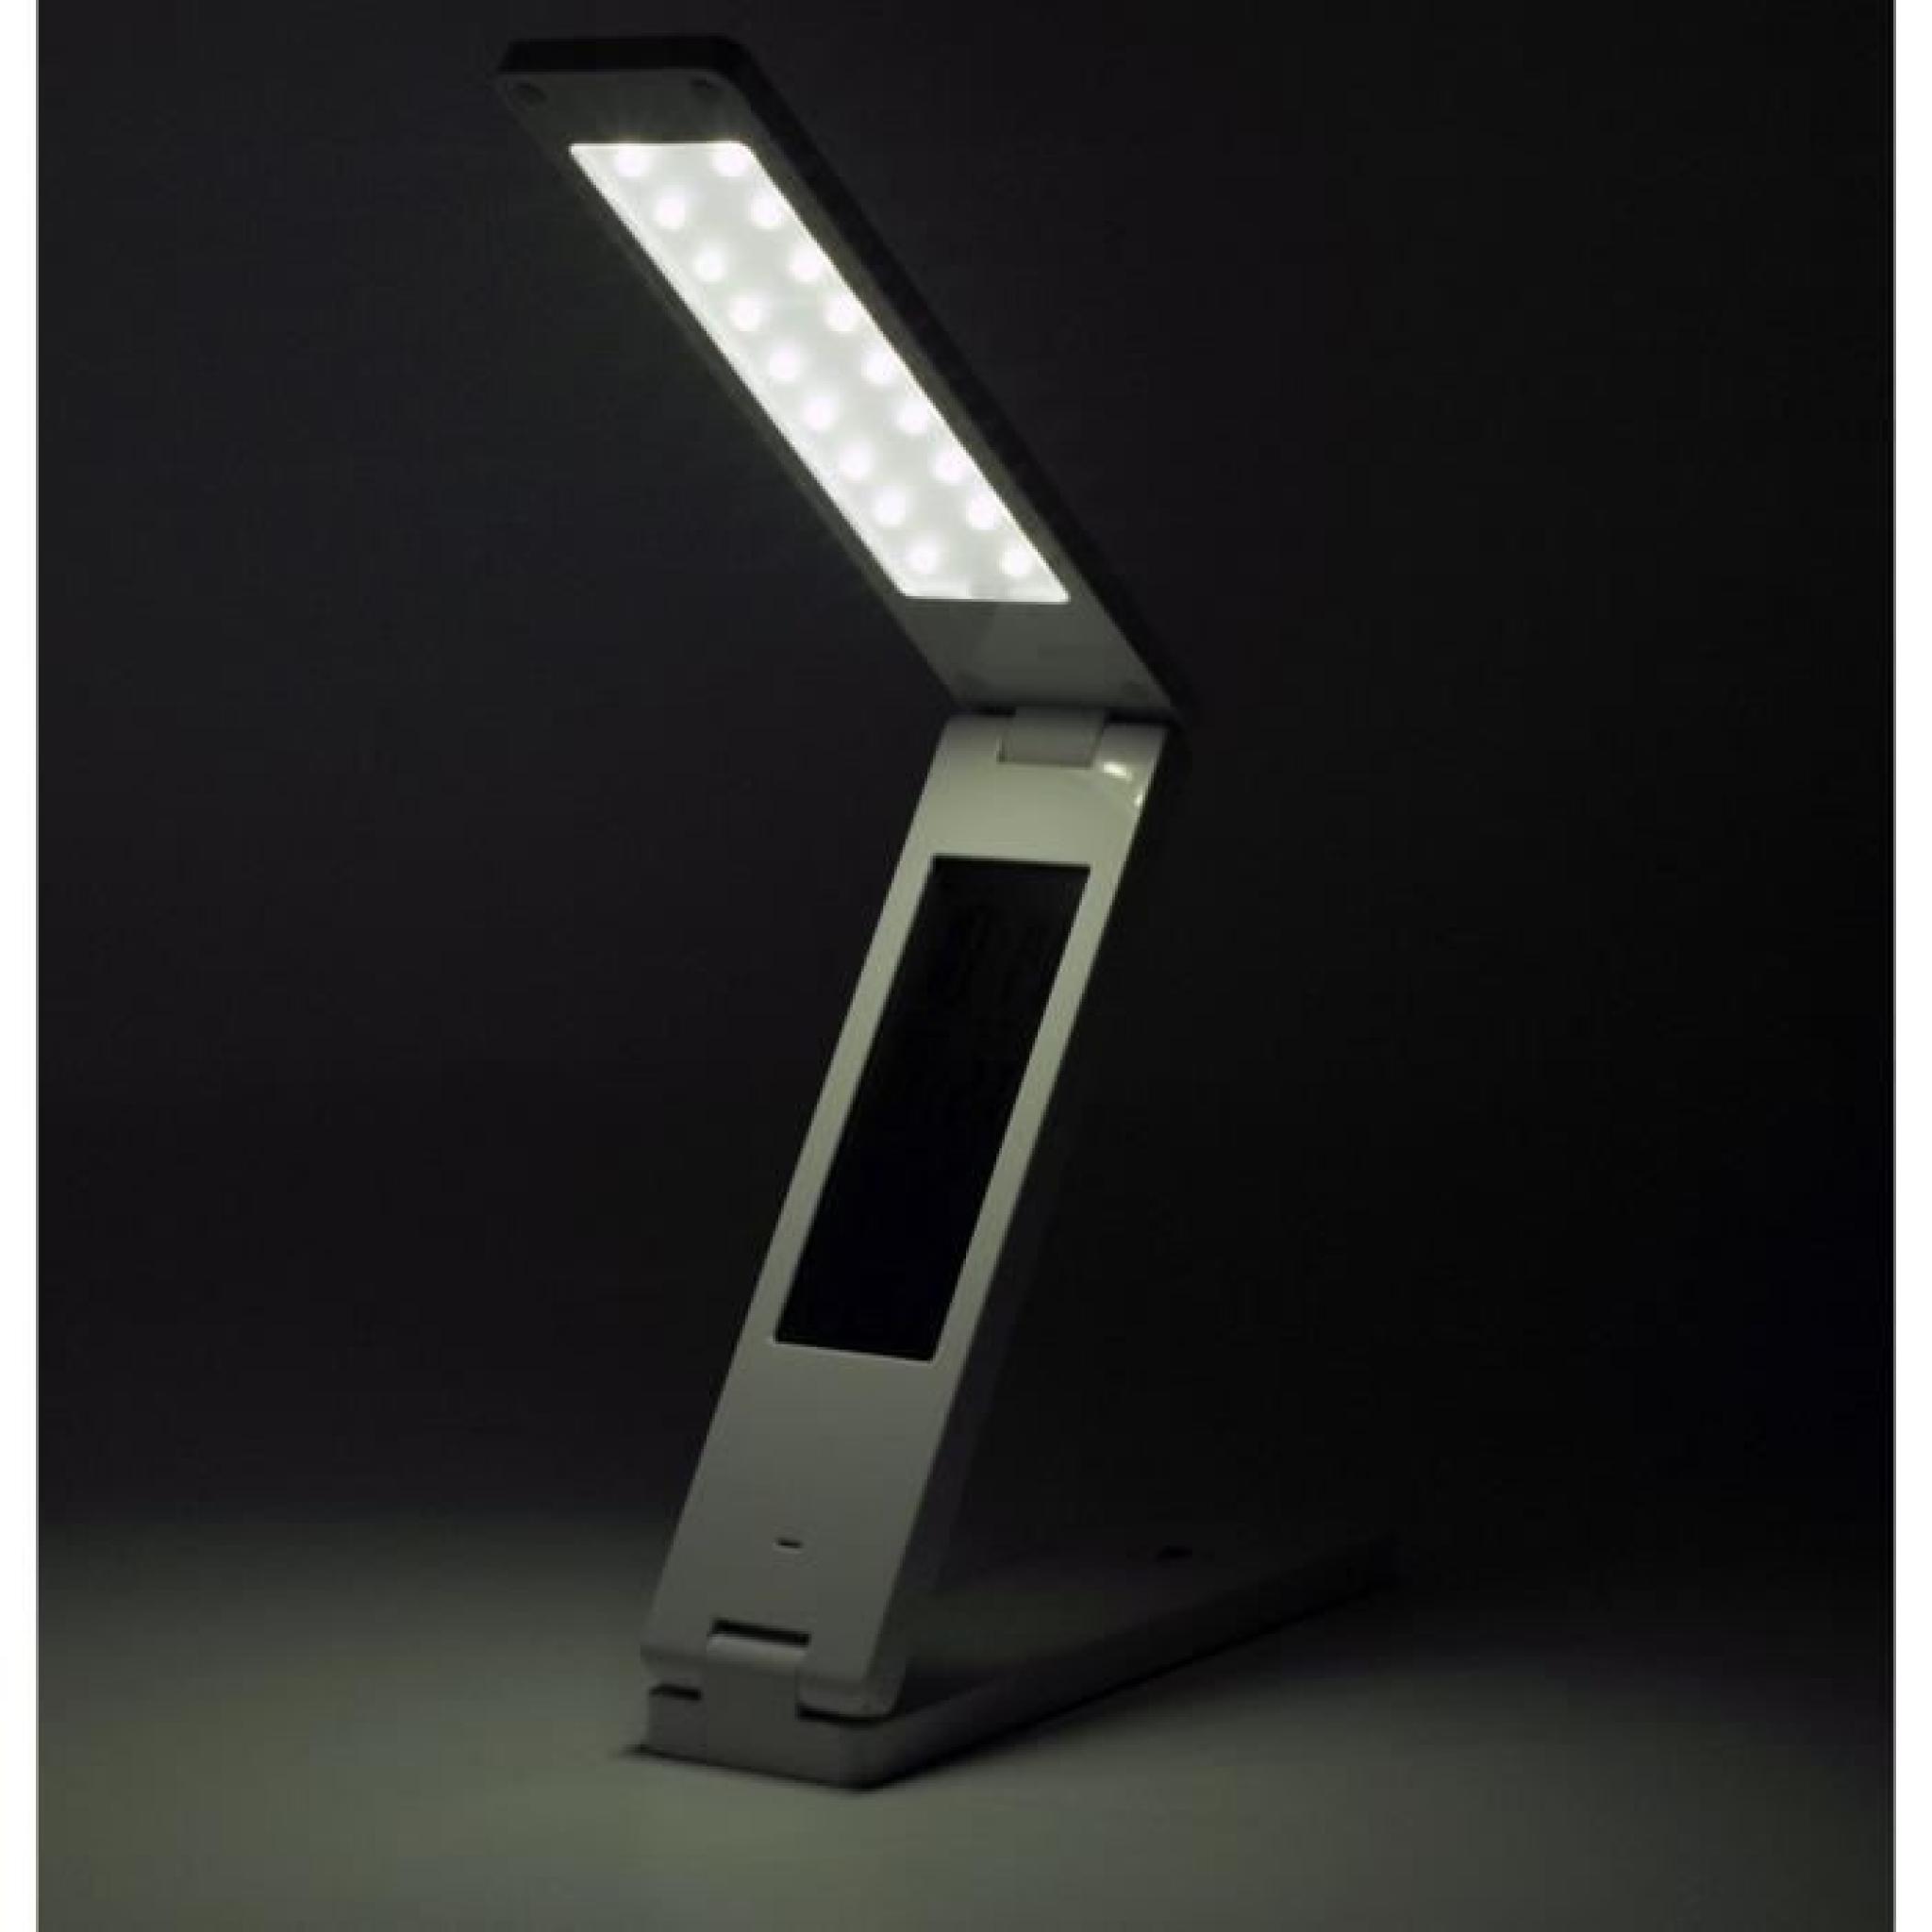 QUMOX Lampe LED lampe de table , lampe de lecture numérique horloge thermomètre réveil calendrier pas cher